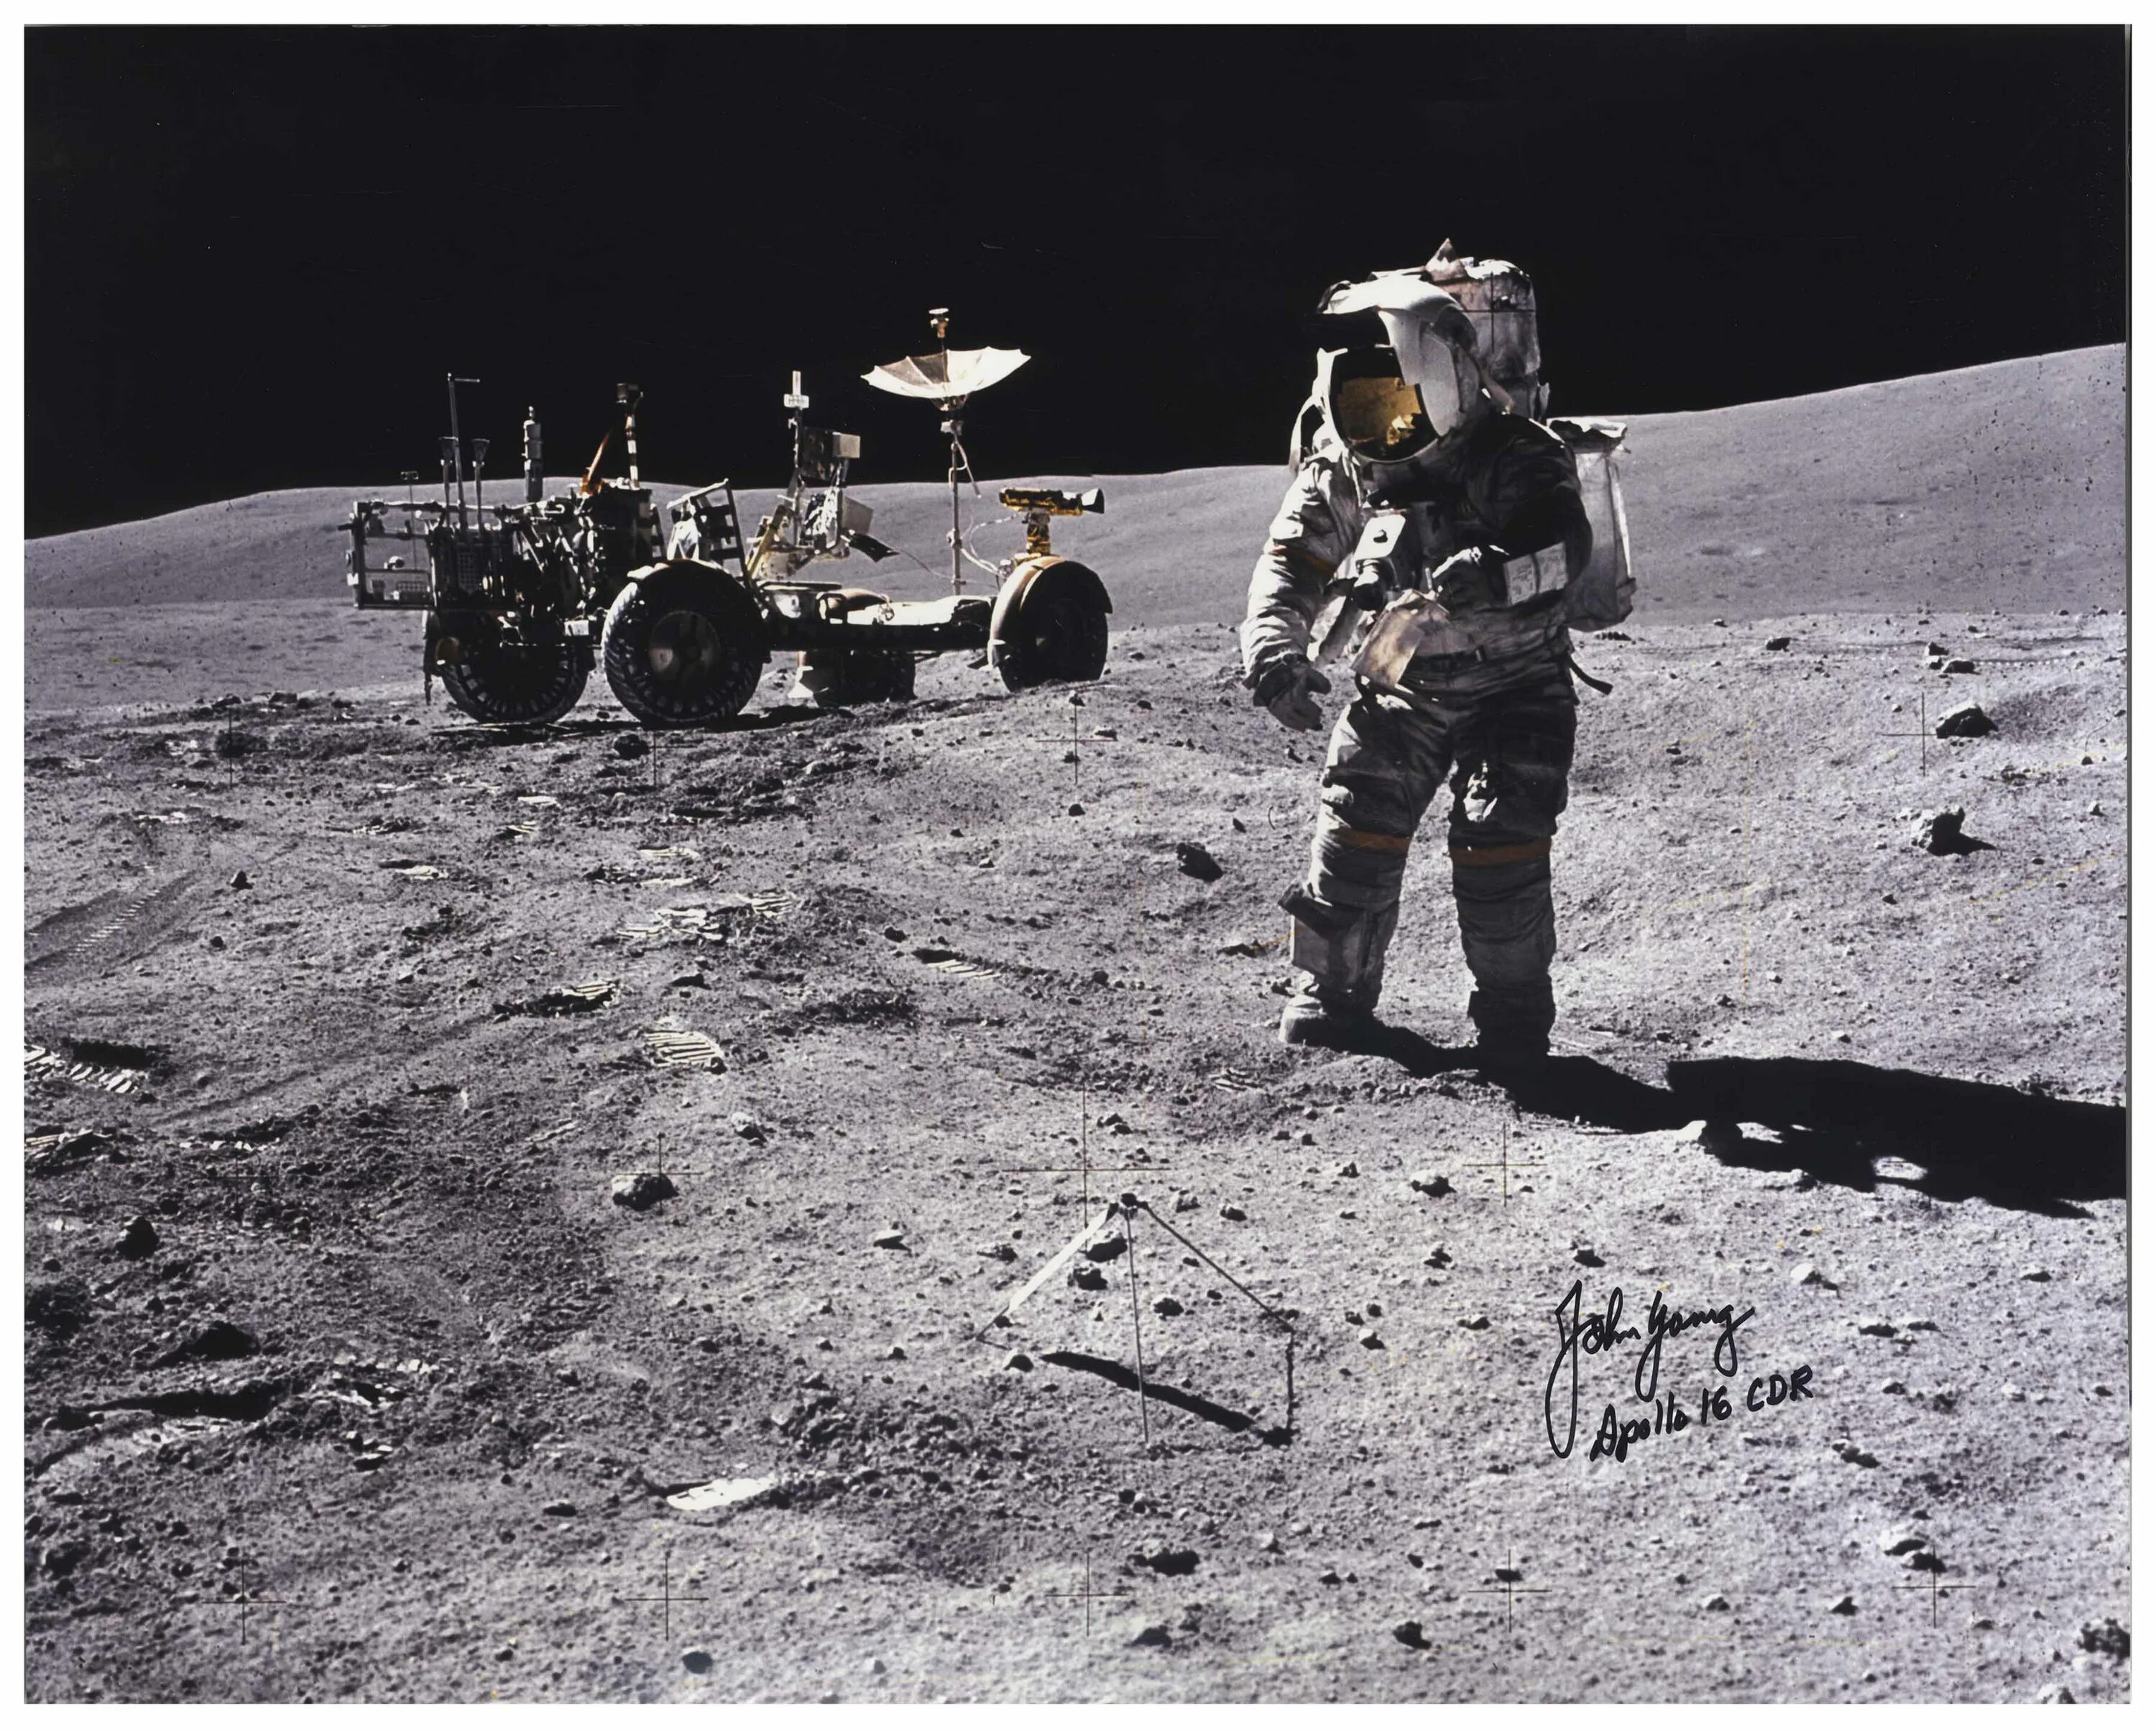 Аполлон 11 высадка. Аполло-14 астронавты на Луне. Миссия Аполлон 11. Американцы на Луне 1969. В каком году человек высадился на луну